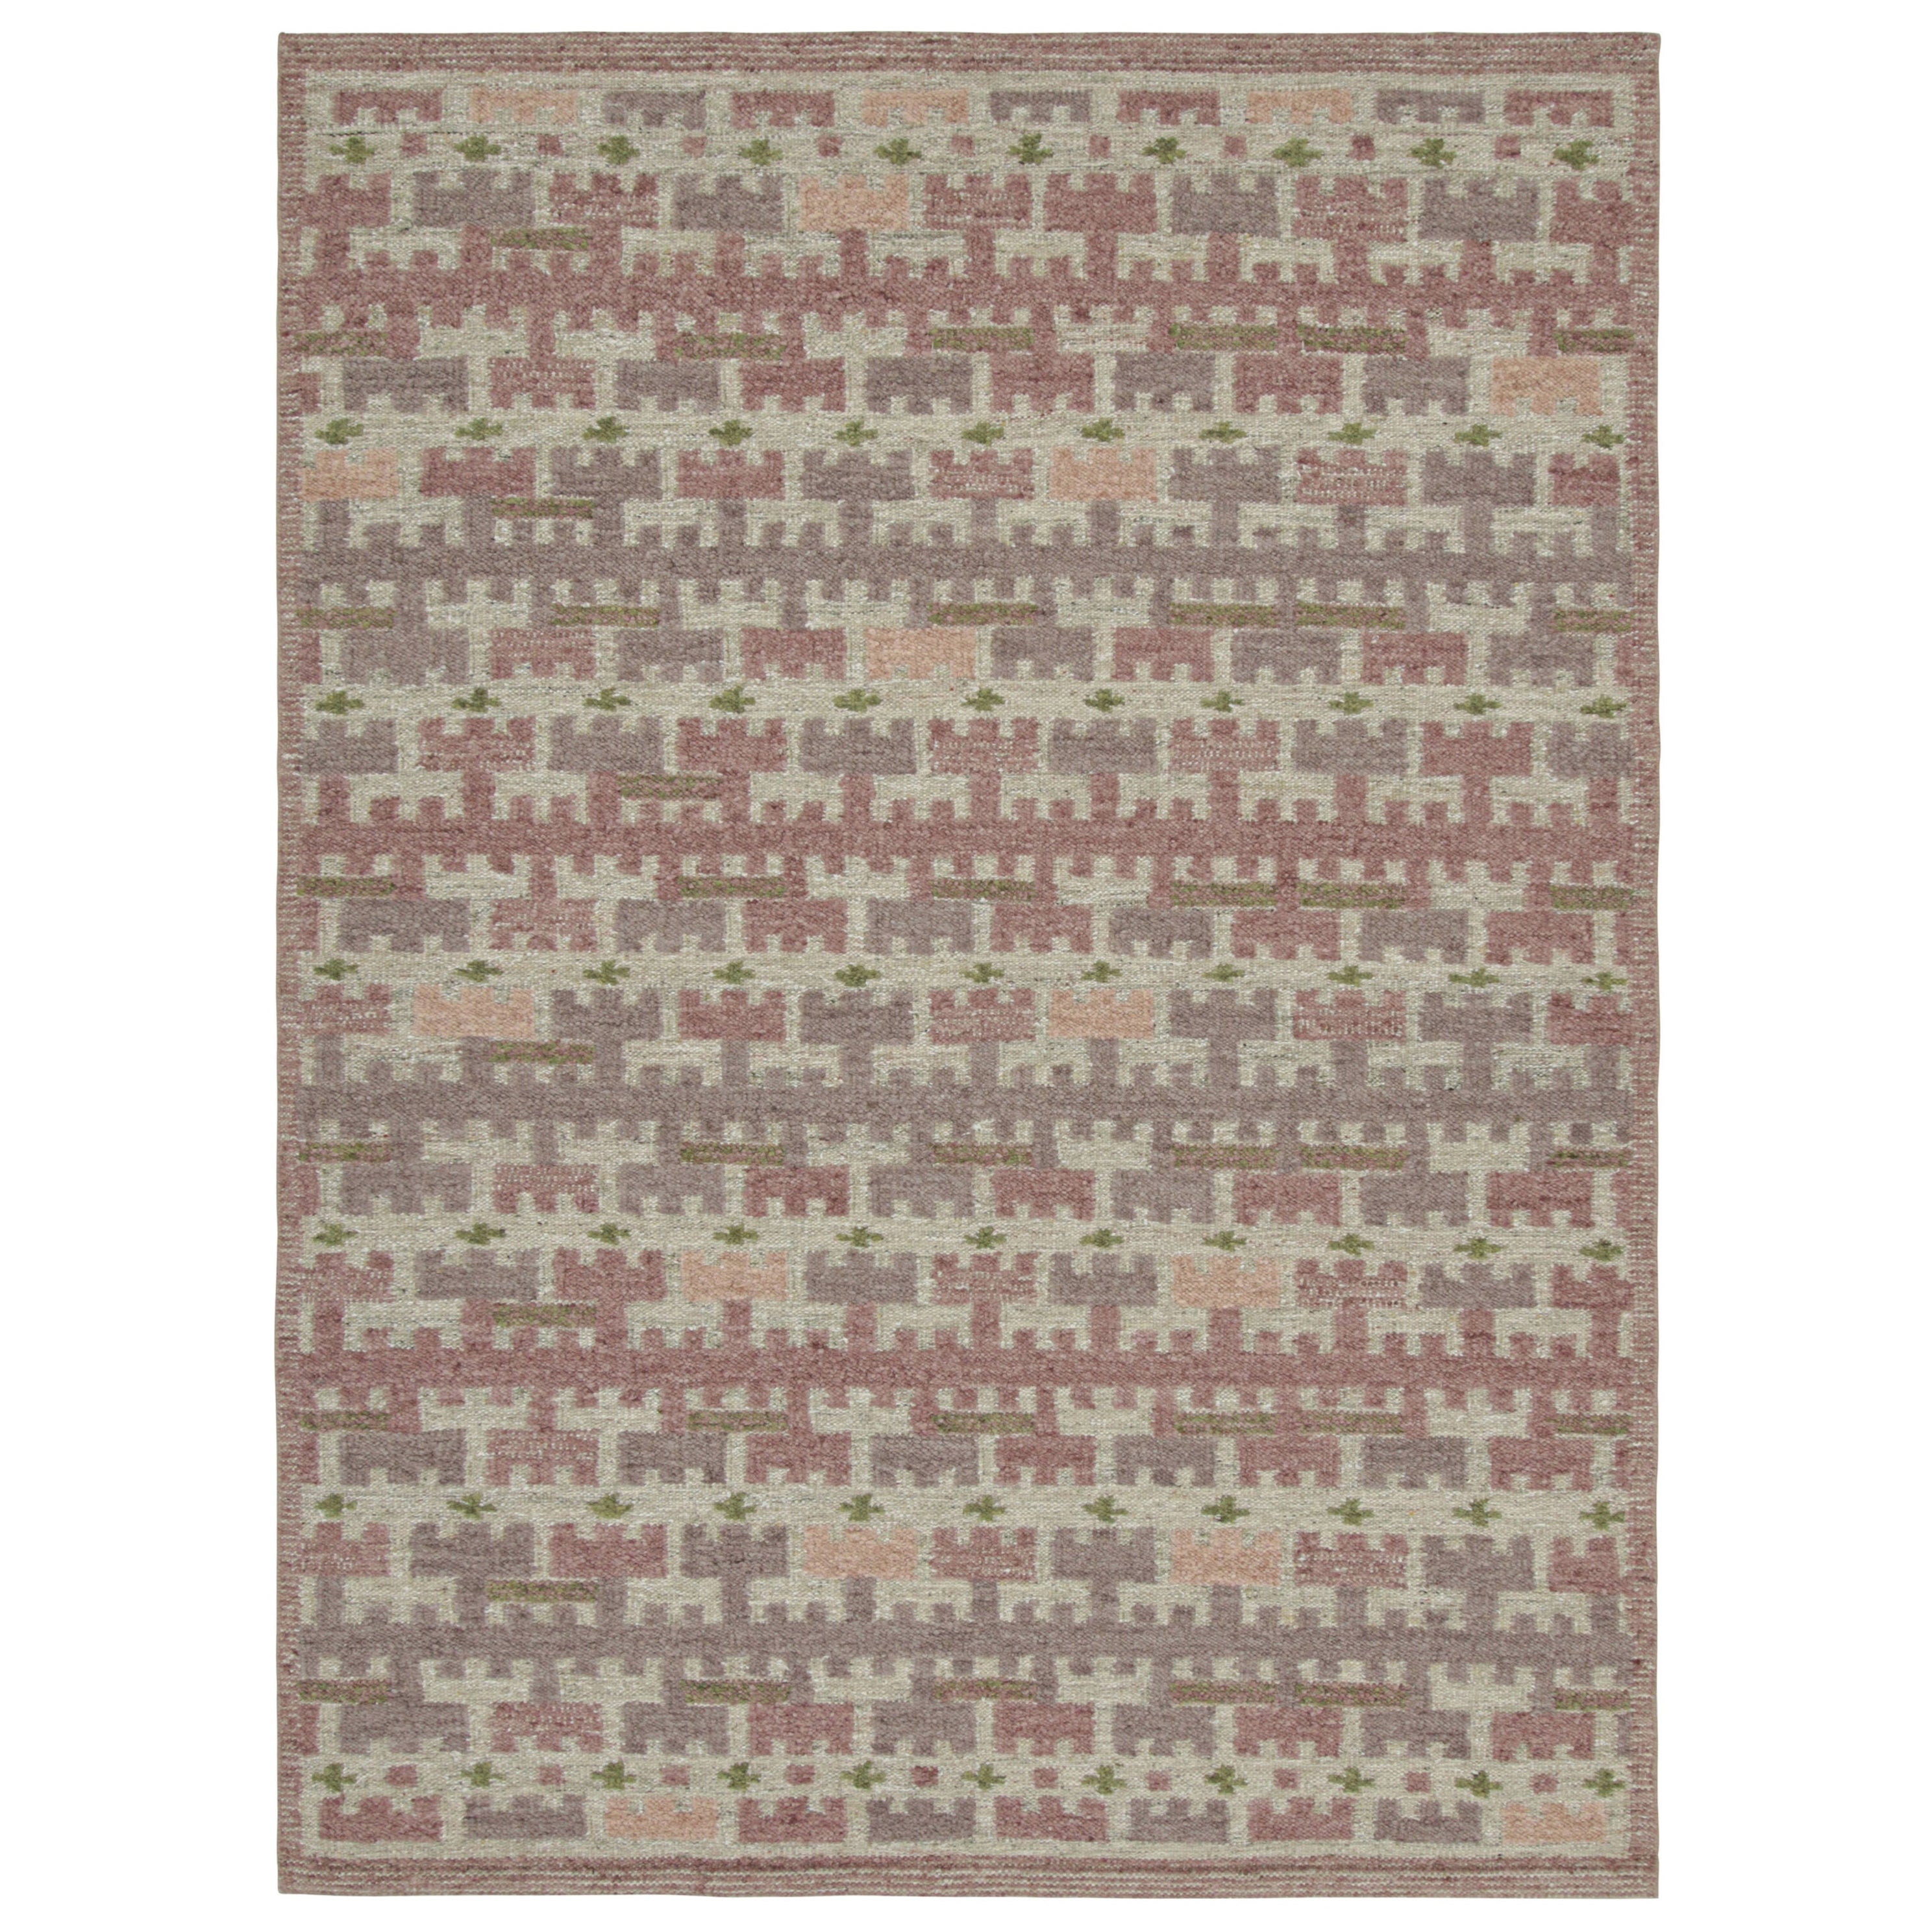 Rug & Kilim's Teppich im skandinavischen Stil mit rosa und lila geometrischen Mustern